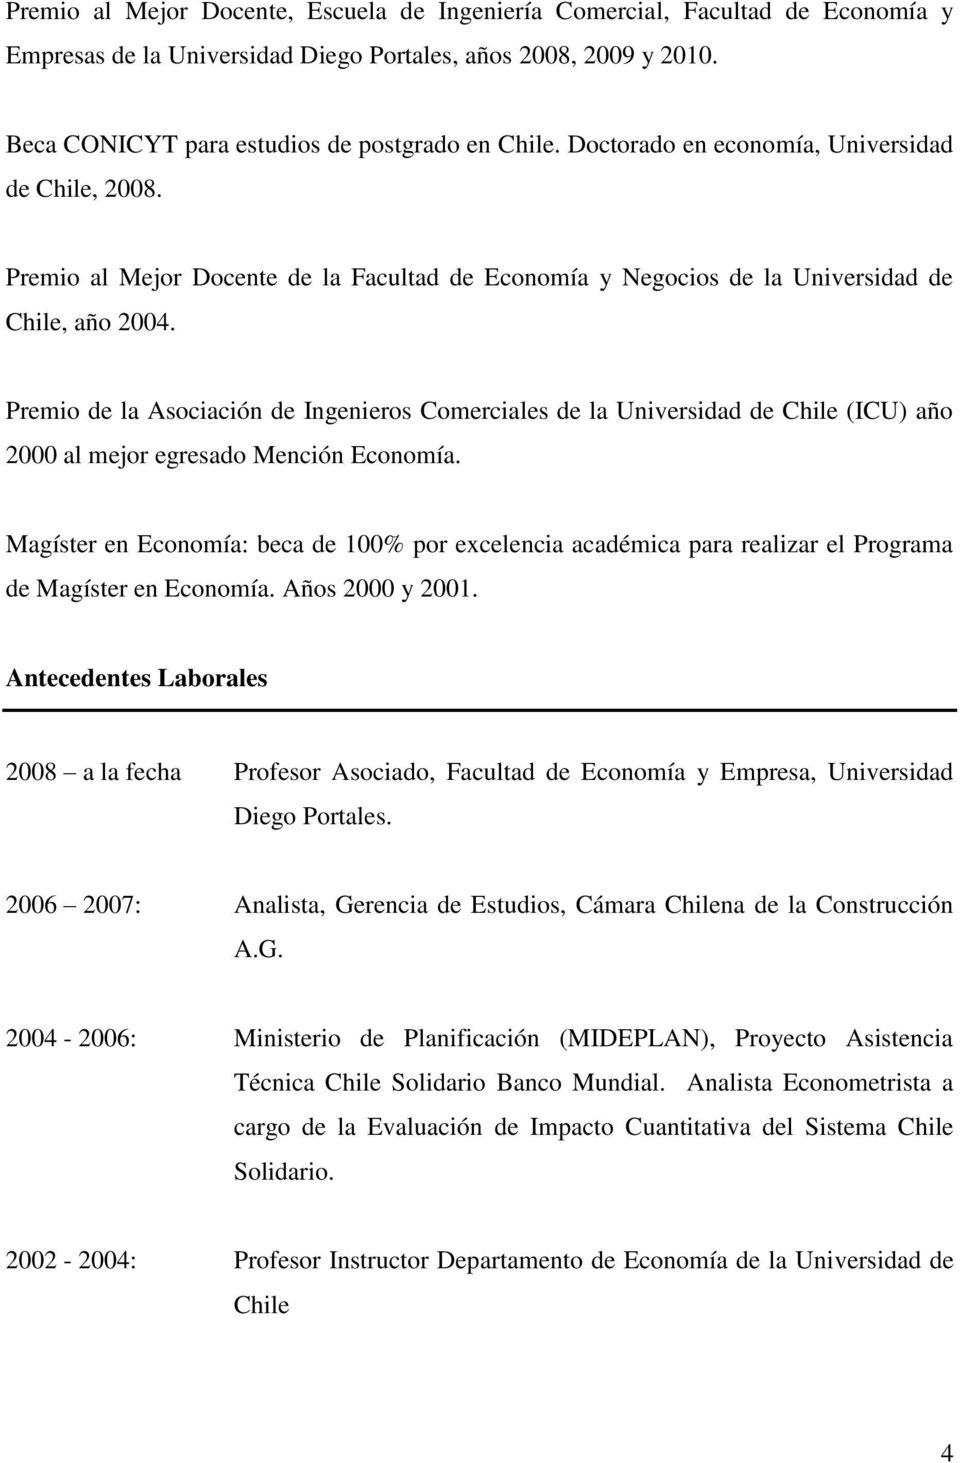 Premio de la Asociación de Ingenieros Comerciales de la Universidad de Chile (ICU) año 2000 al mejor egresado Mención Economía.